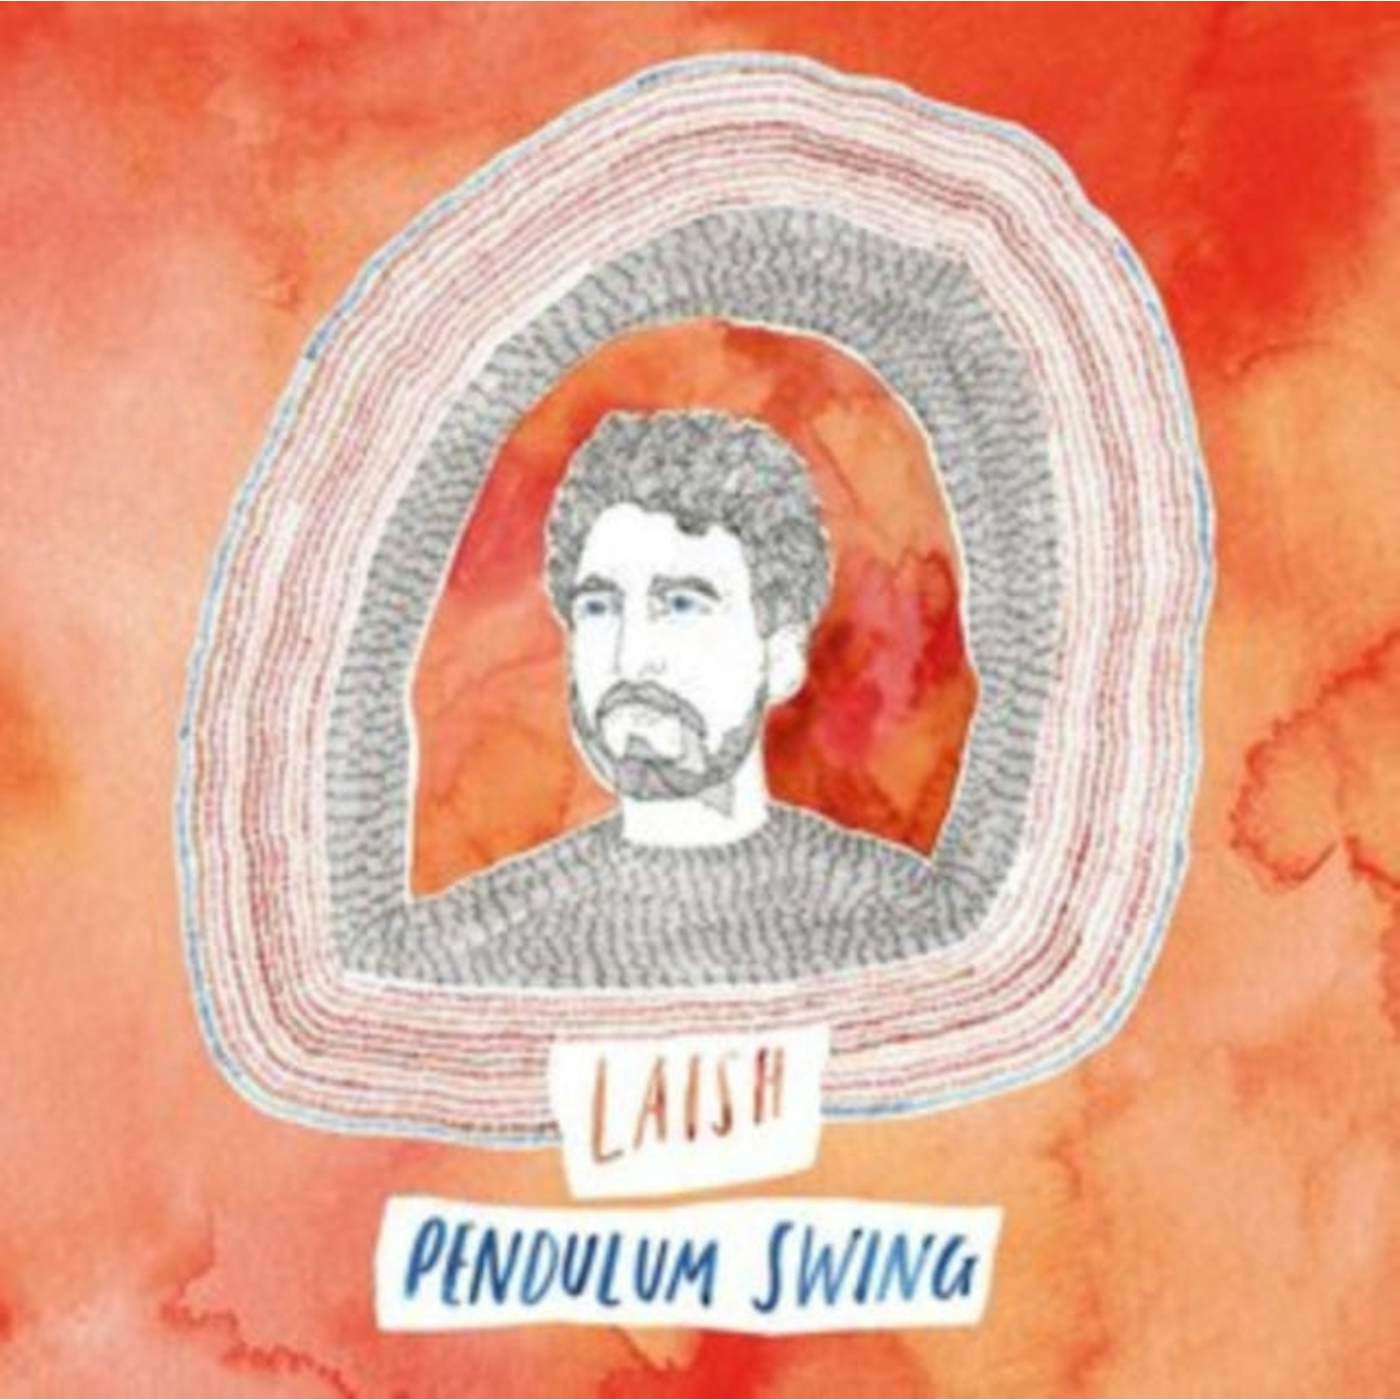 Laish LP - Pendulum Swing (Vinyl)